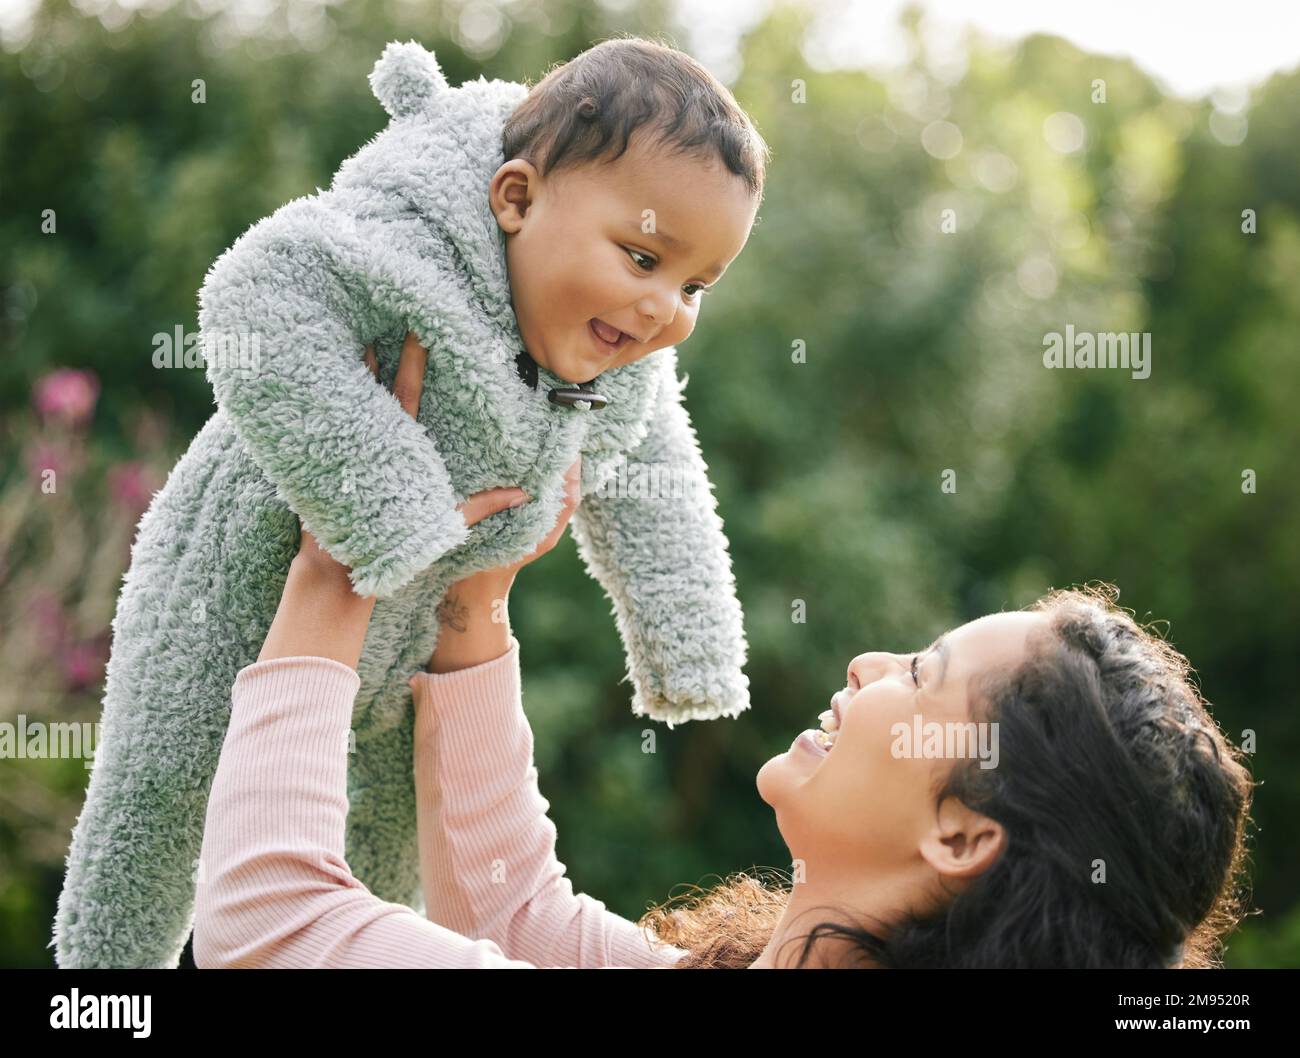 Ein Lächeln der Babys lehrt uns, ohne Grund glücklich zu sein. Eine Mutter, die sich draußen mit ihrem kleinen Sohn anfreundet. Stockfoto